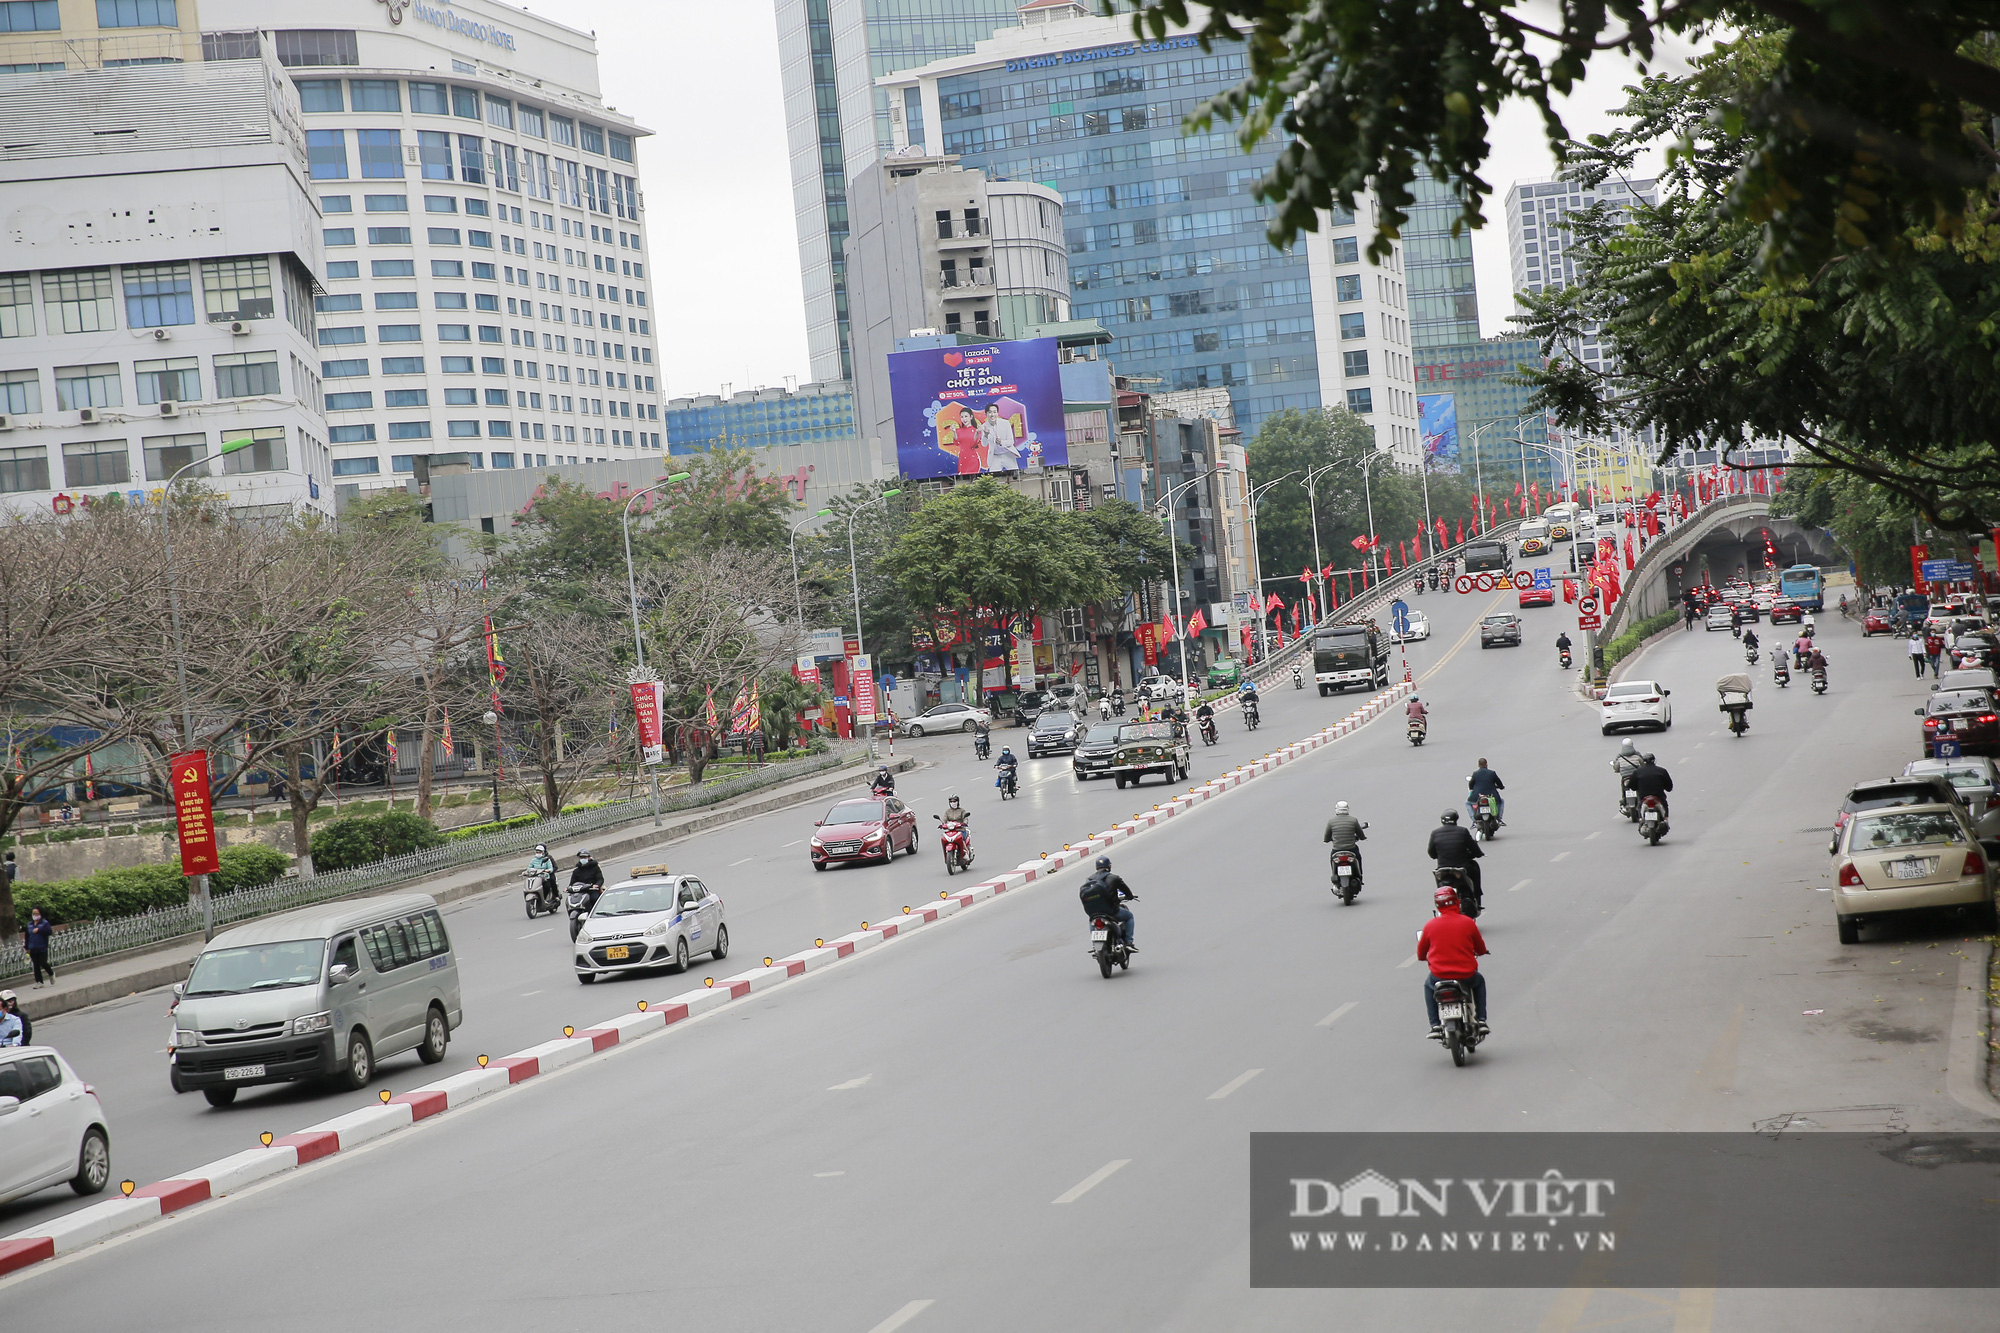 Bất ngờ giao thông Hà Nội trong ngày đầu tiên đi làm sau kỳ nghỉ Tết Nguyên đán - Ảnh 8.